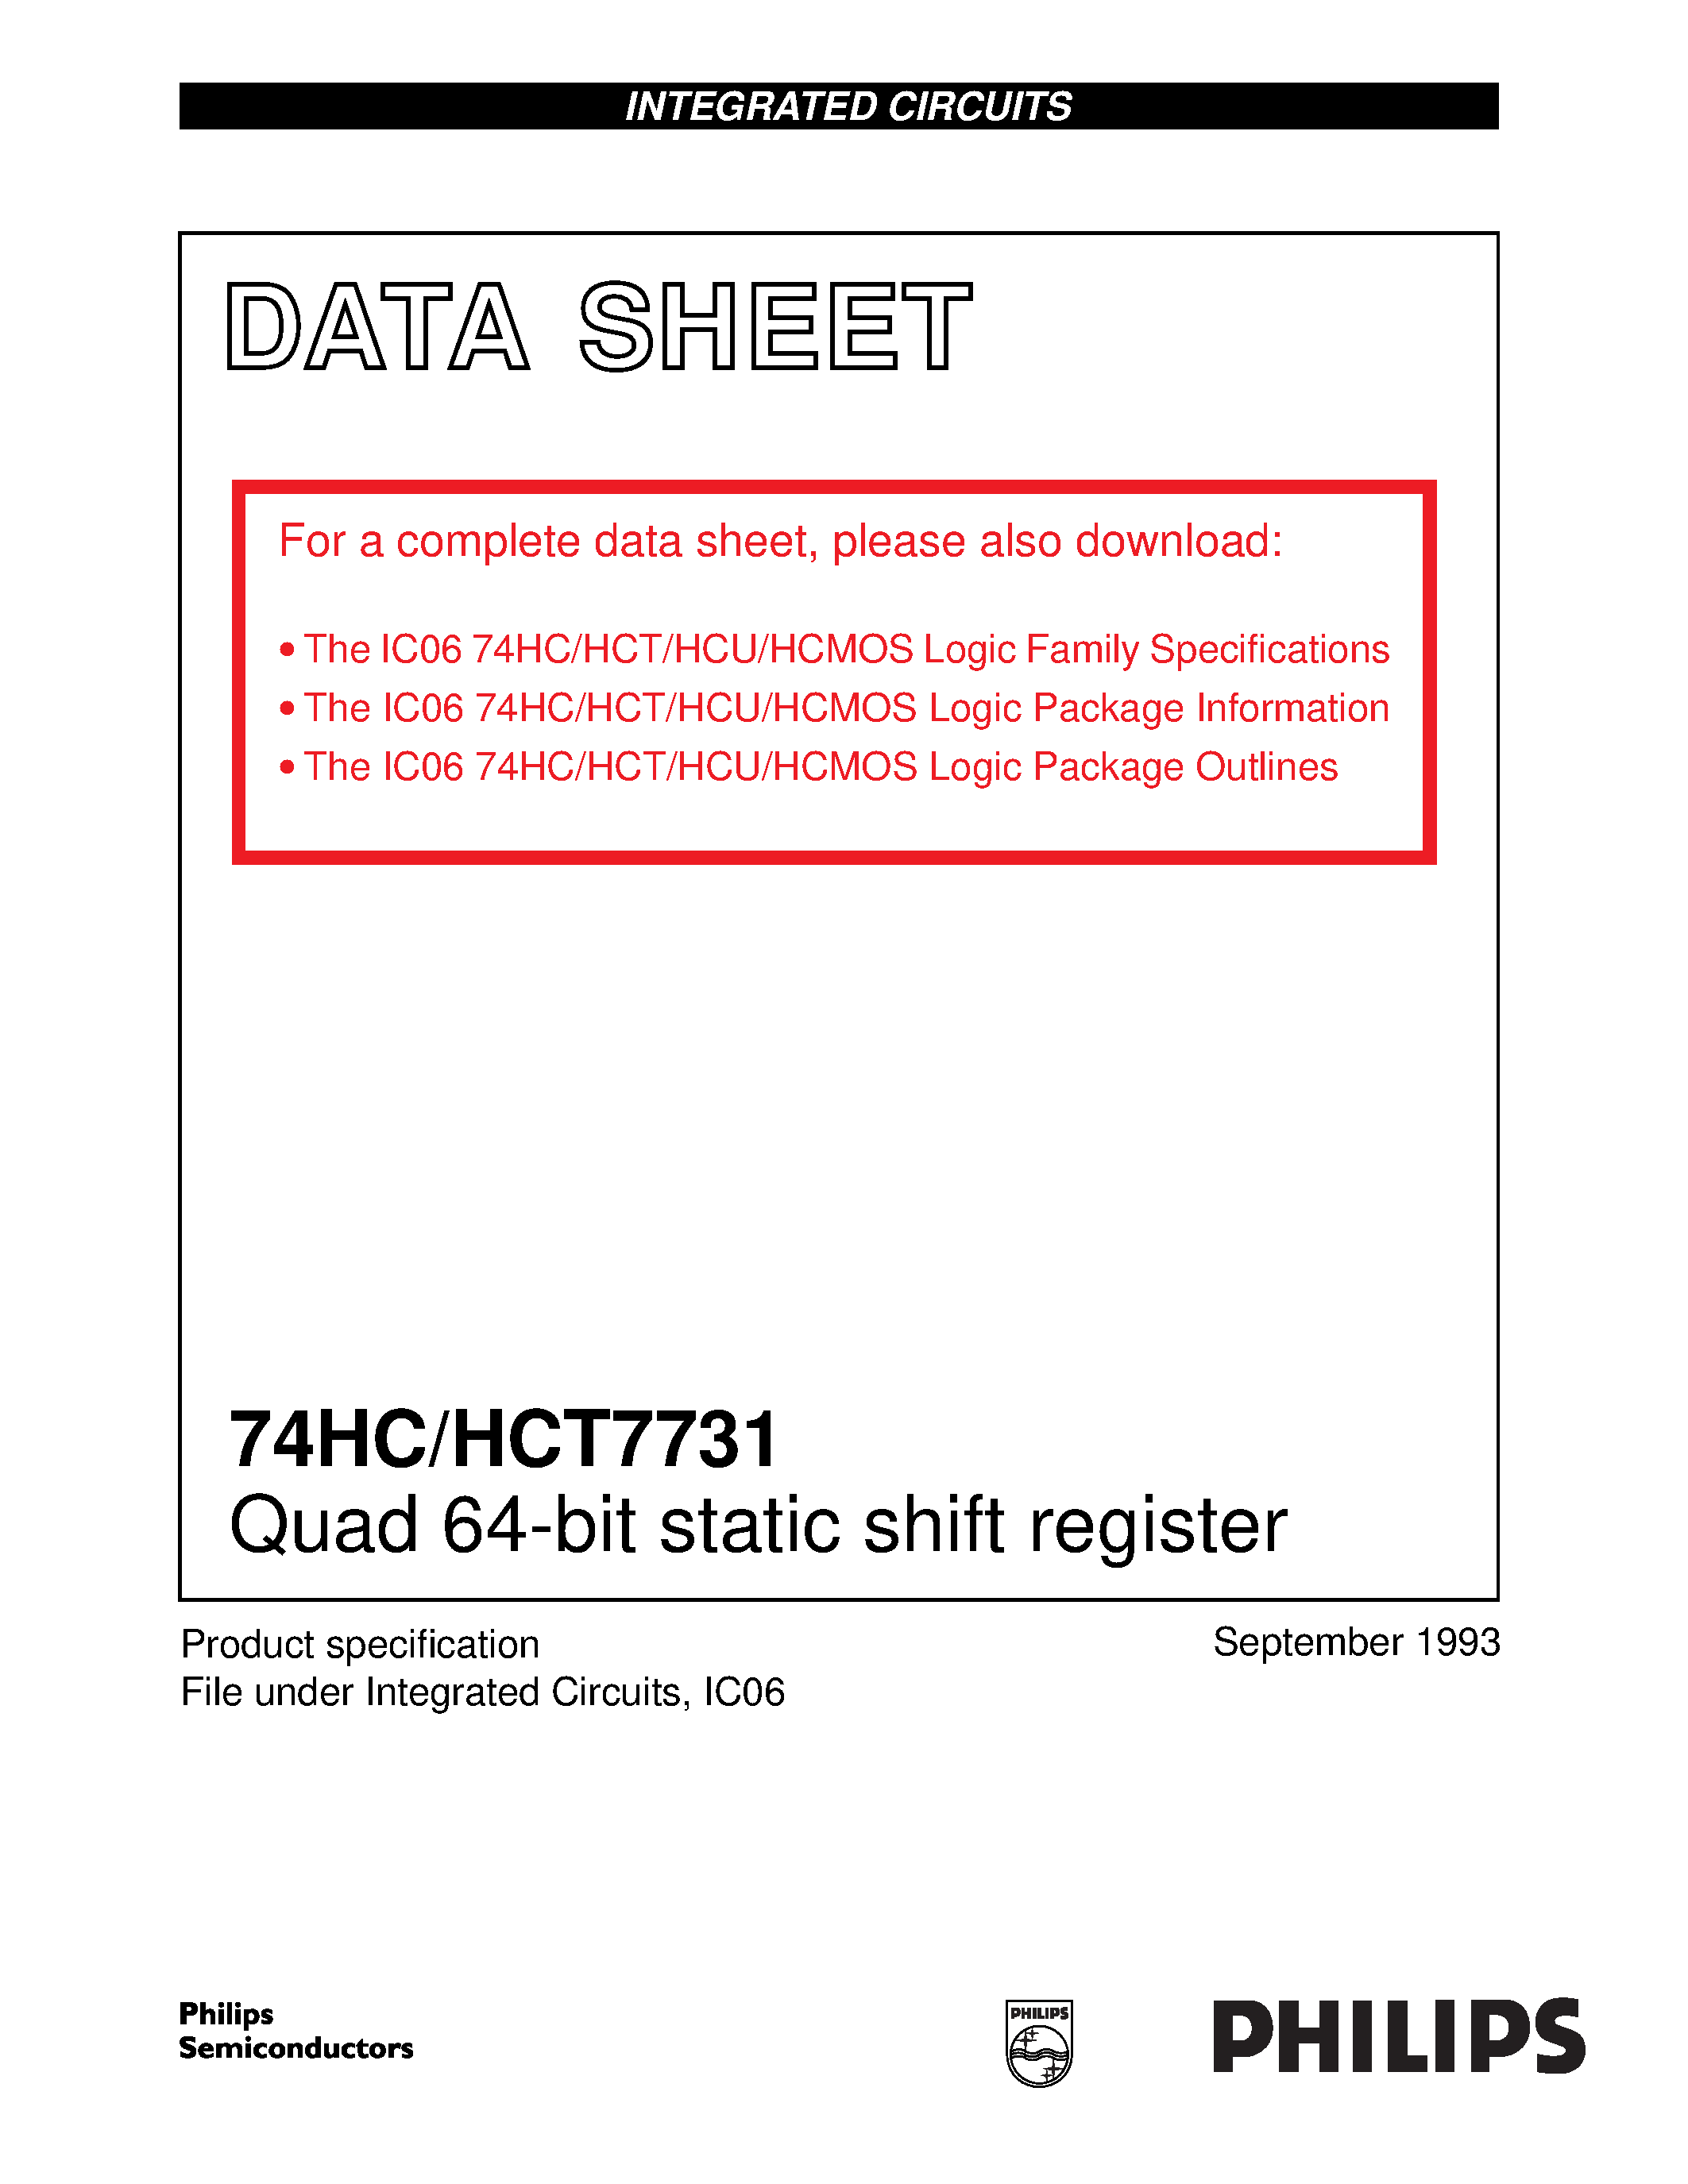 Даташит 74HCT7731 - Quad 64-bit static shift register страница 1